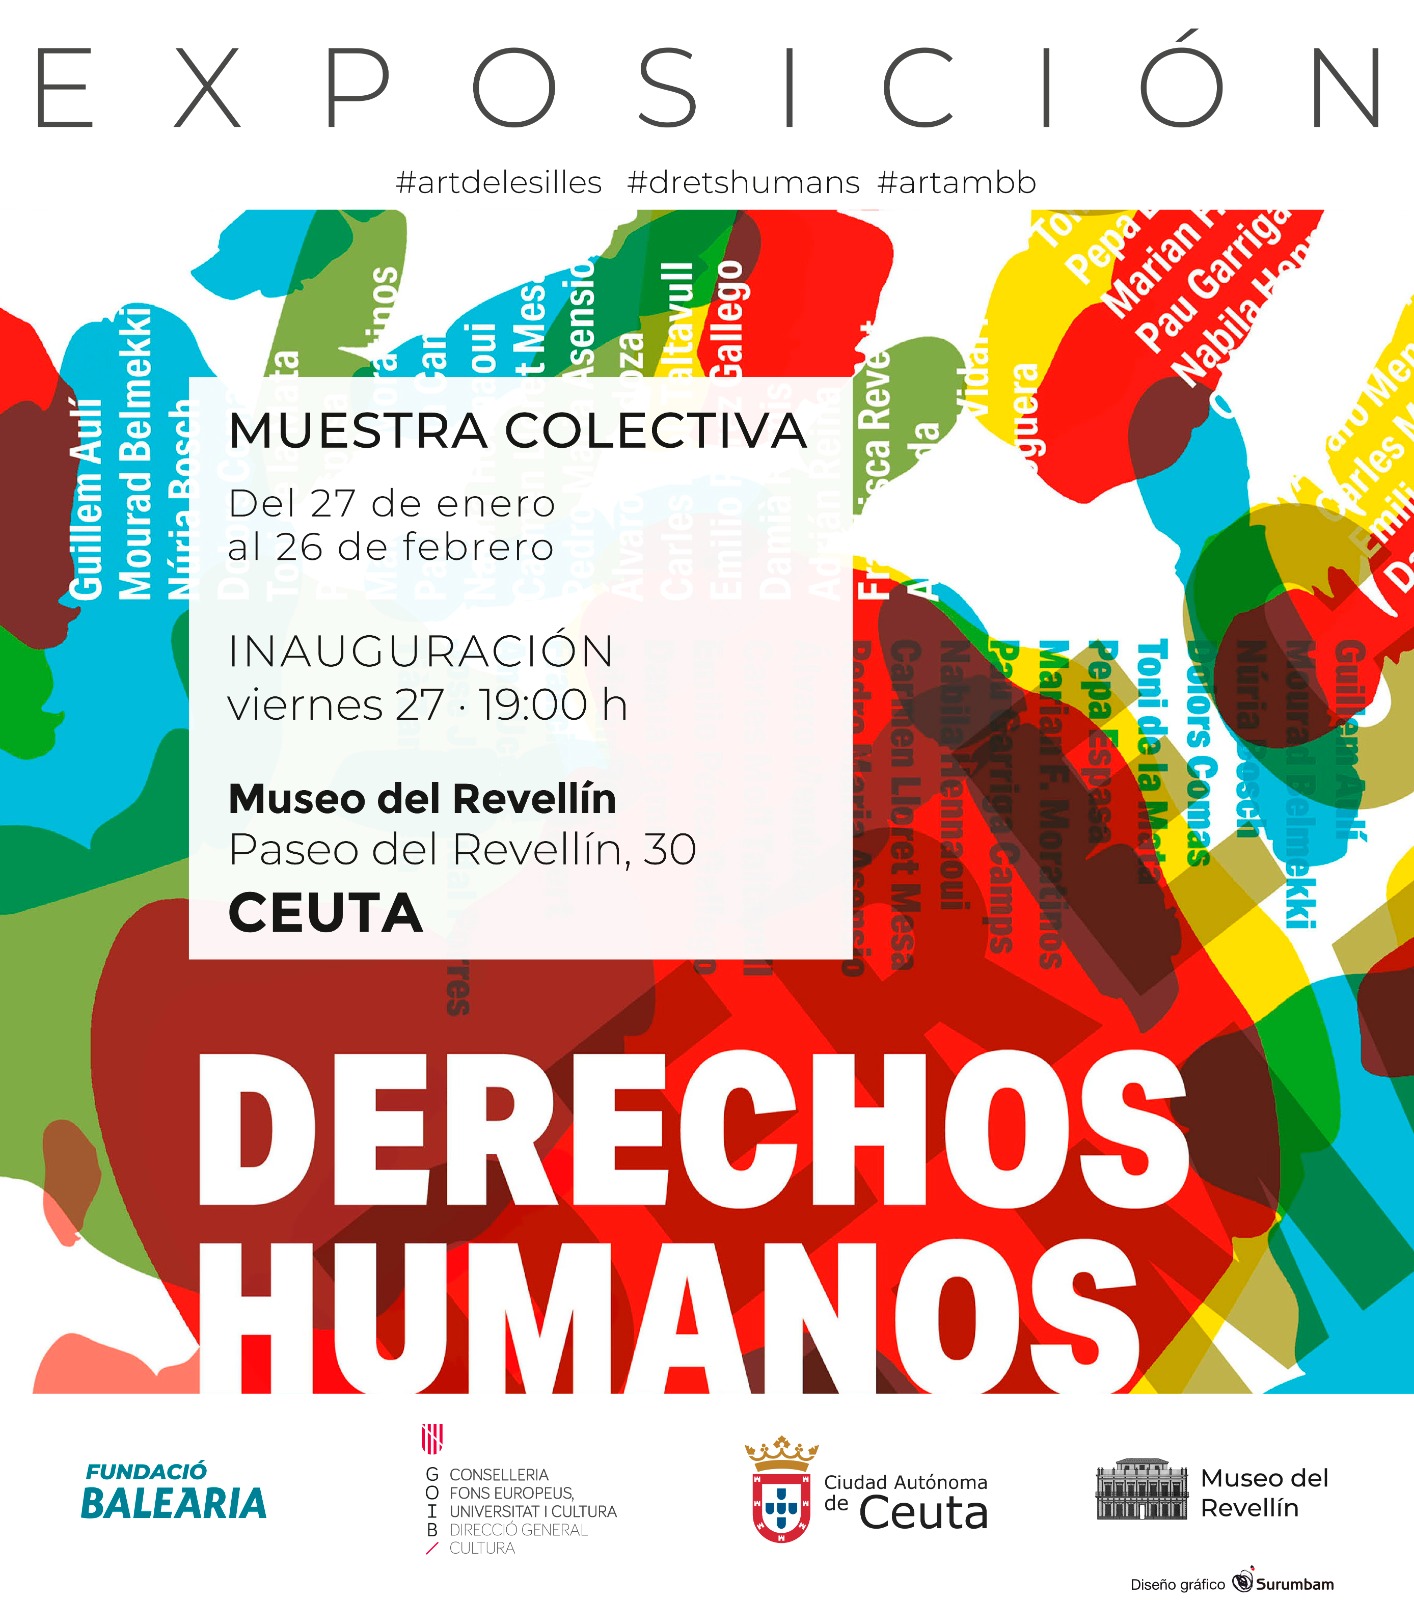 La Fundación Baleària inaugura la exposición ‘Derechos Humanos’ en el Museo del Revellín de Ceuta